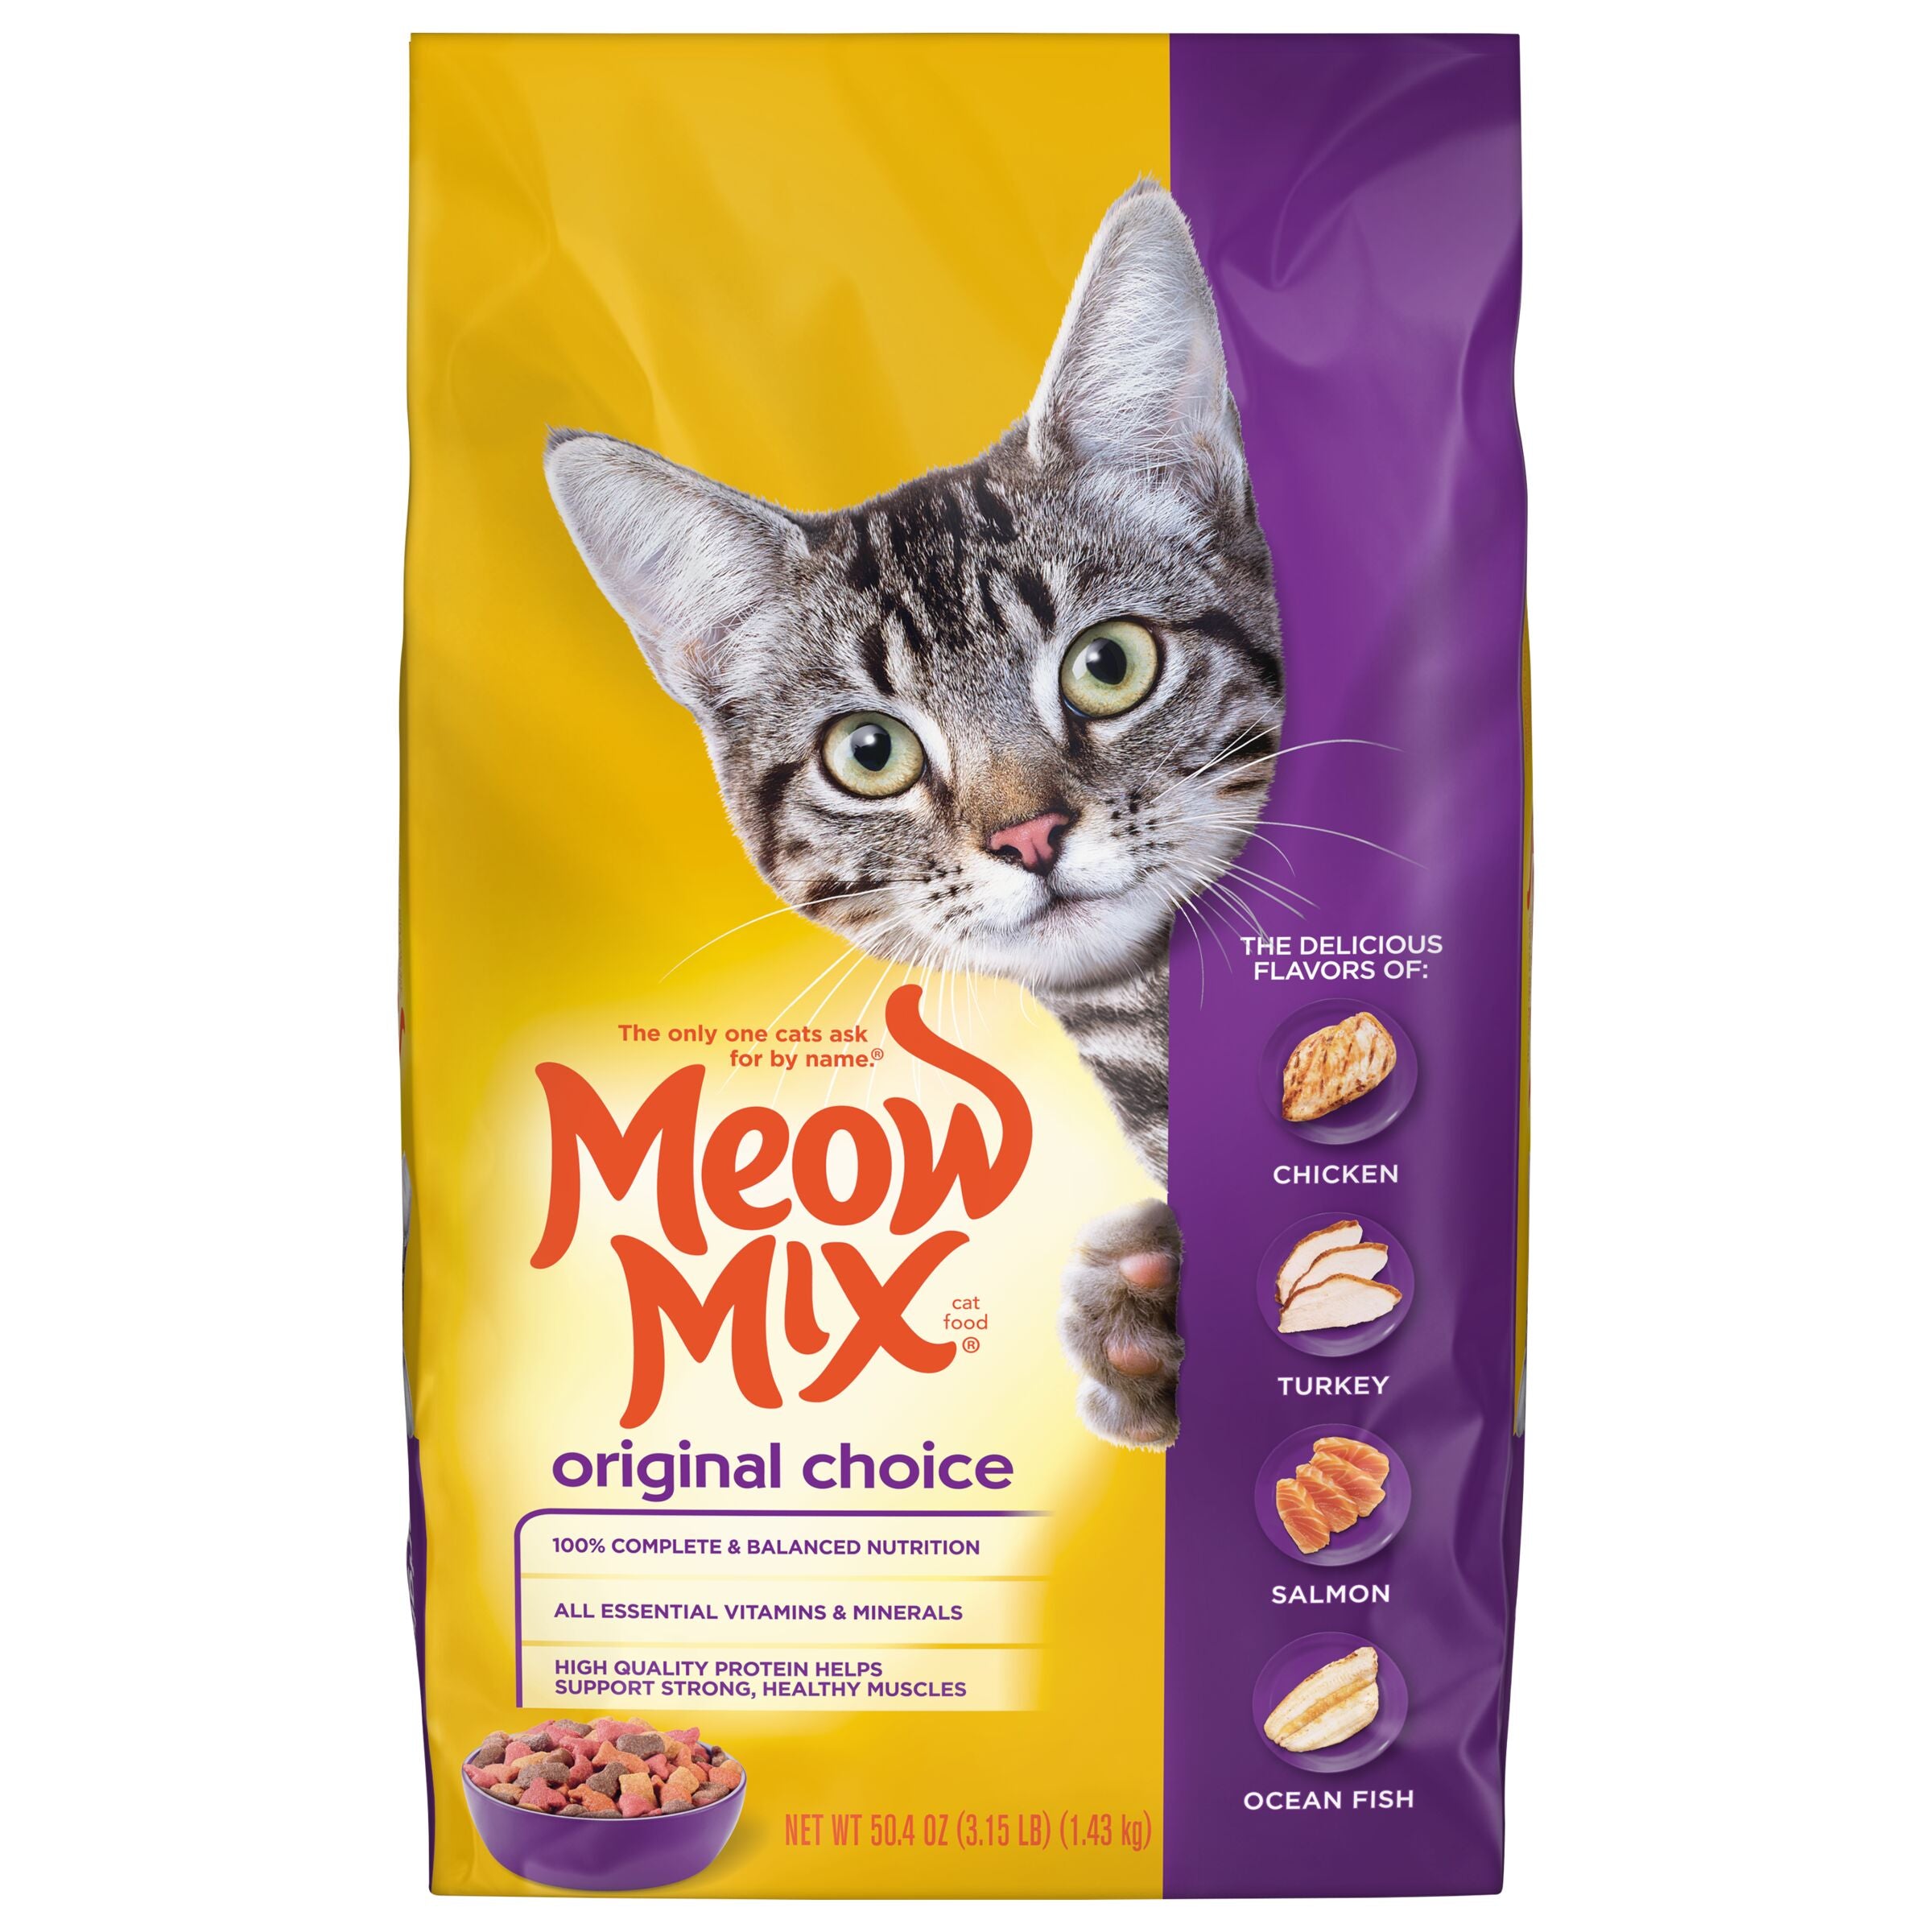 Meow Mix Original Choice Dry Cat Food, 3.15 lb